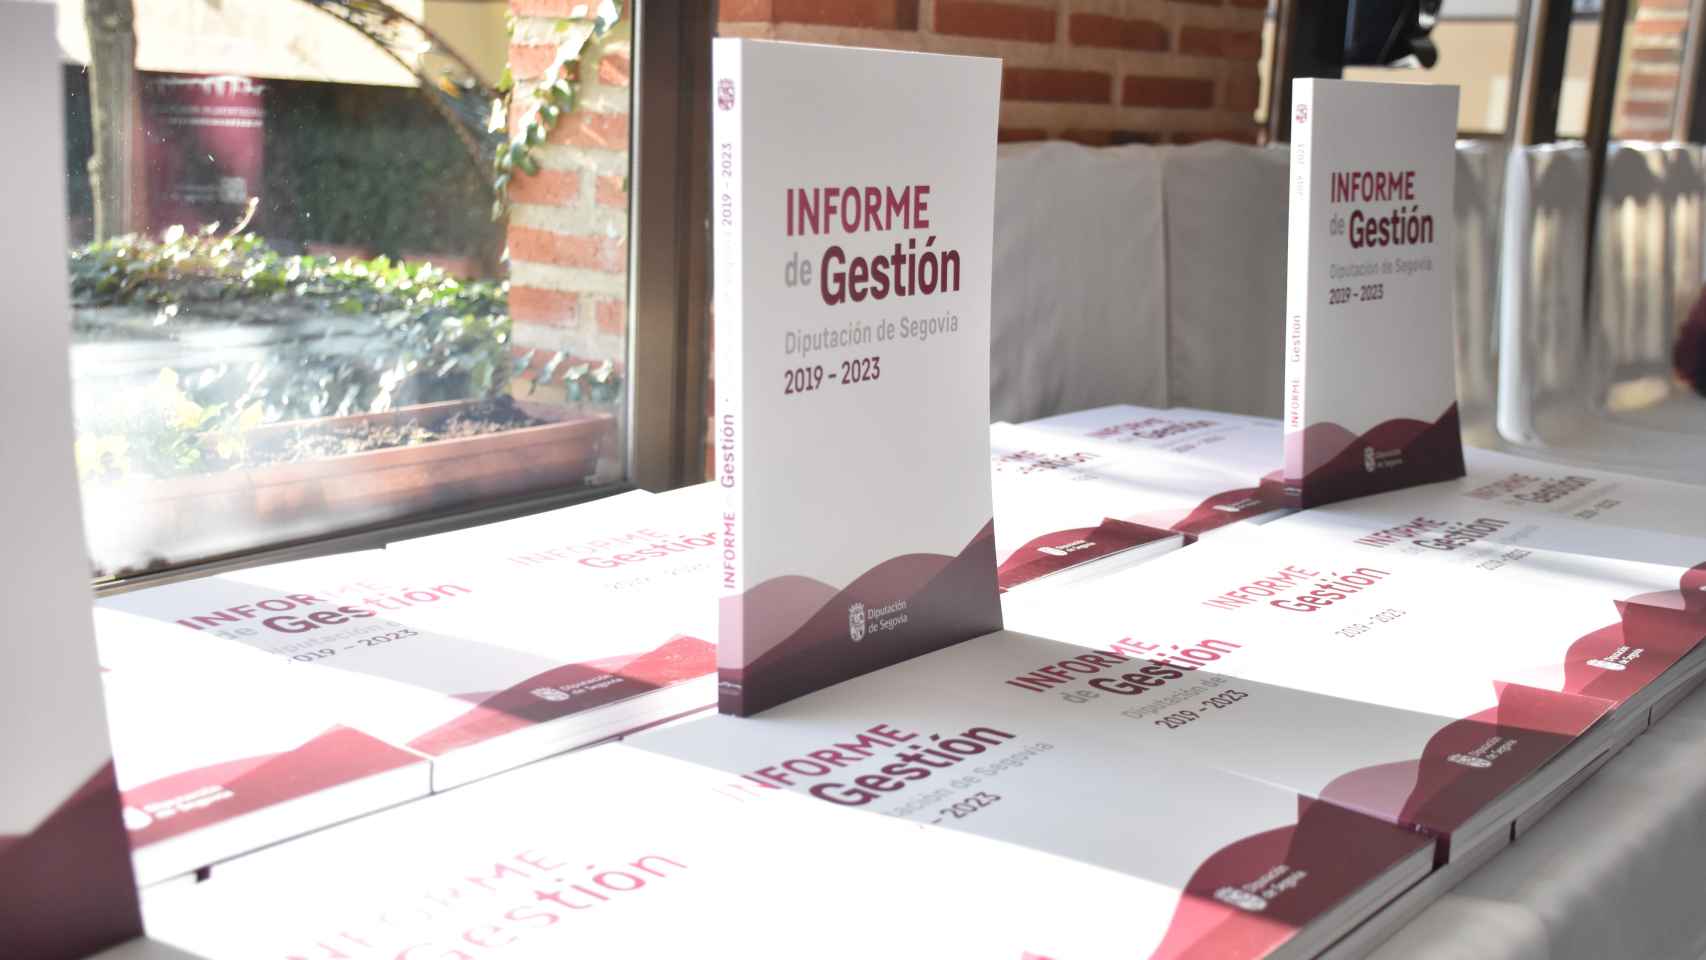 Informe de gestión 2019-2023 de la Diputación de Segovia